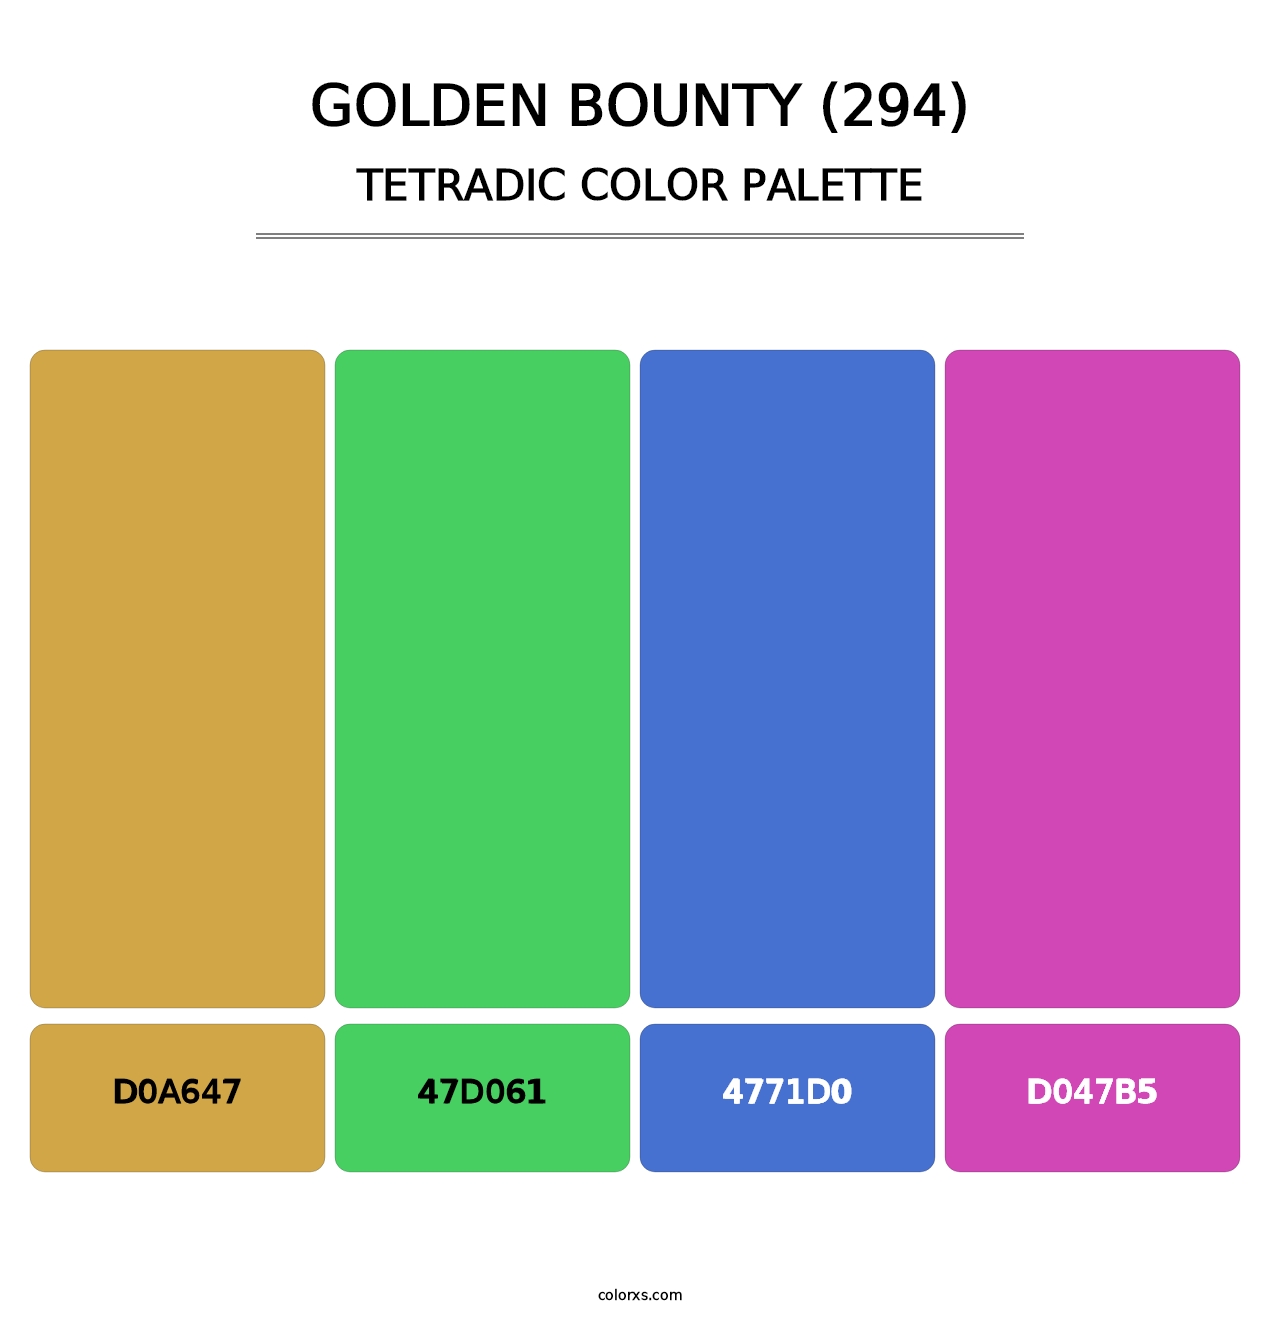 Golden Bounty (294) - Tetradic Color Palette